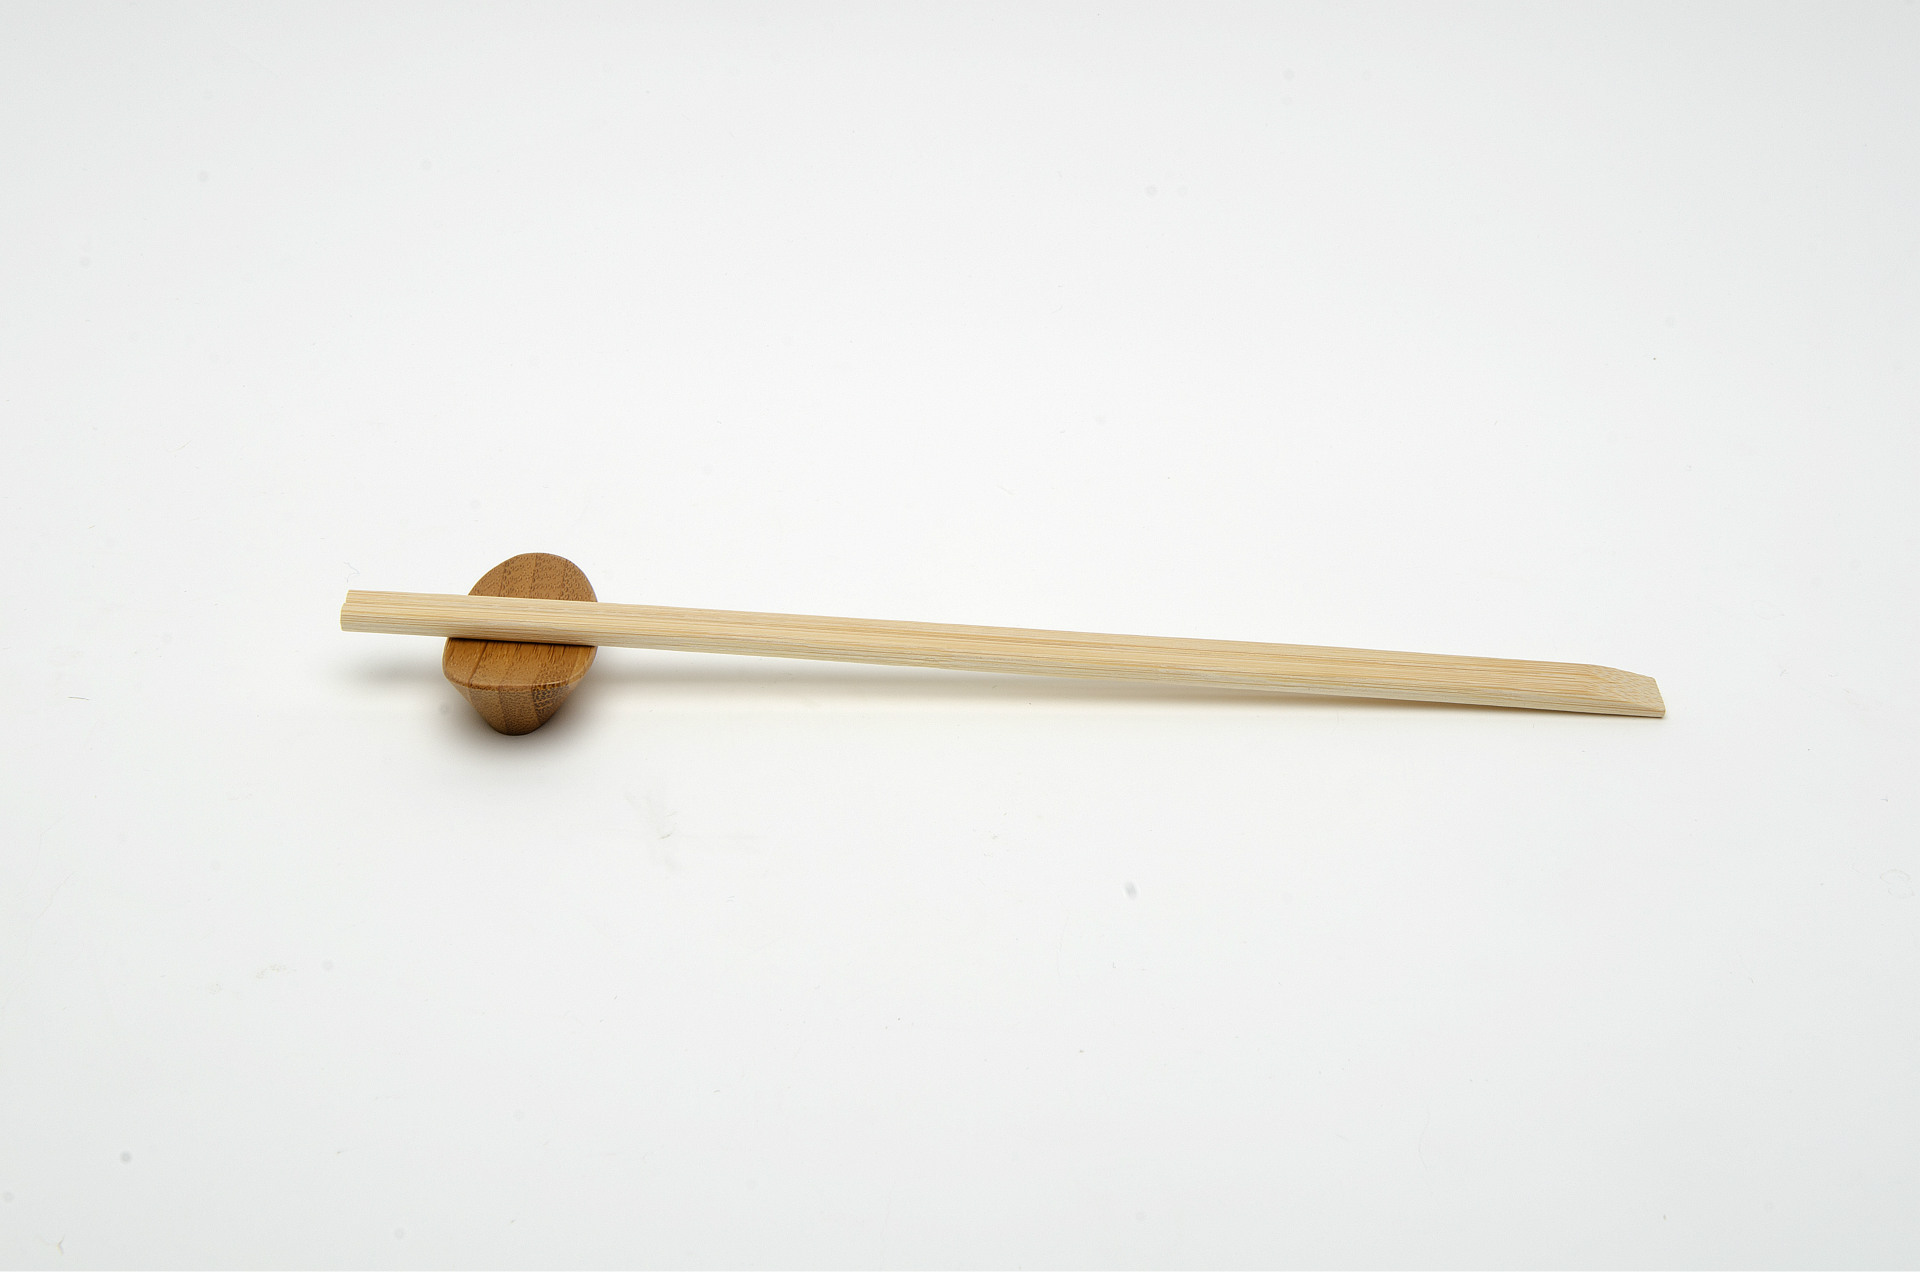 Comprar Natual palillos de bambú sushi, Natual palillos de bambú sushi Precios, Natual palillos de bambú sushi Marcas, Natual palillos de bambú sushi Fabricante, Natual palillos de bambú sushi Citas, Natual palillos de bambú sushi Empresa.